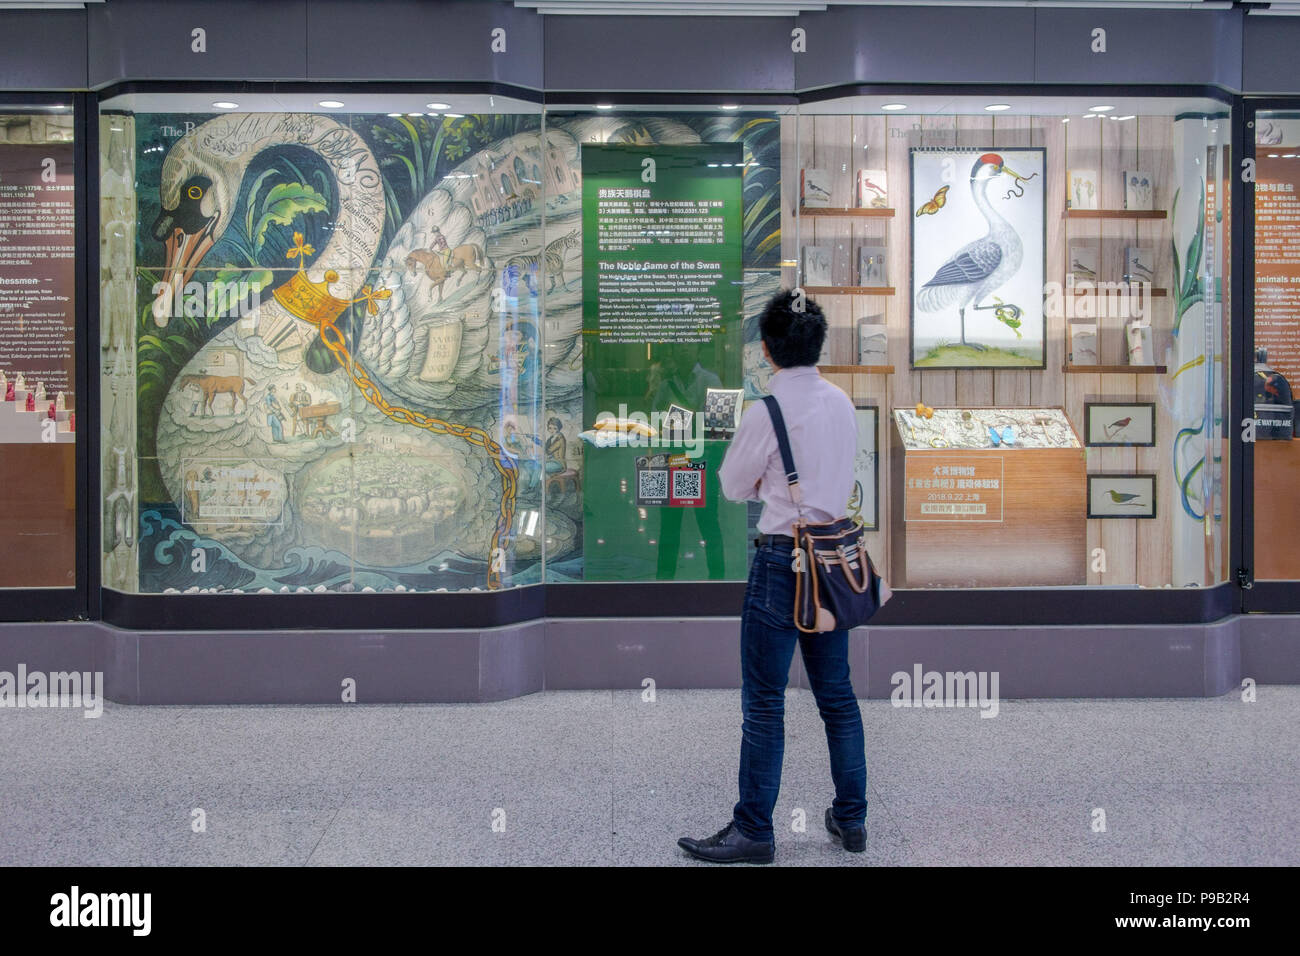 Shanghai, Shanghai, Chine. 17 juillet, 2018. Shanghai, Chine-dérivée d'expositions Musée Britannique peut être vu sur l'affichage à la station de métro de Shanghai à Shanghai, Chine. Crédit : SIPA Asie/ZUMA/Alamy Fil Live News Banque D'Images